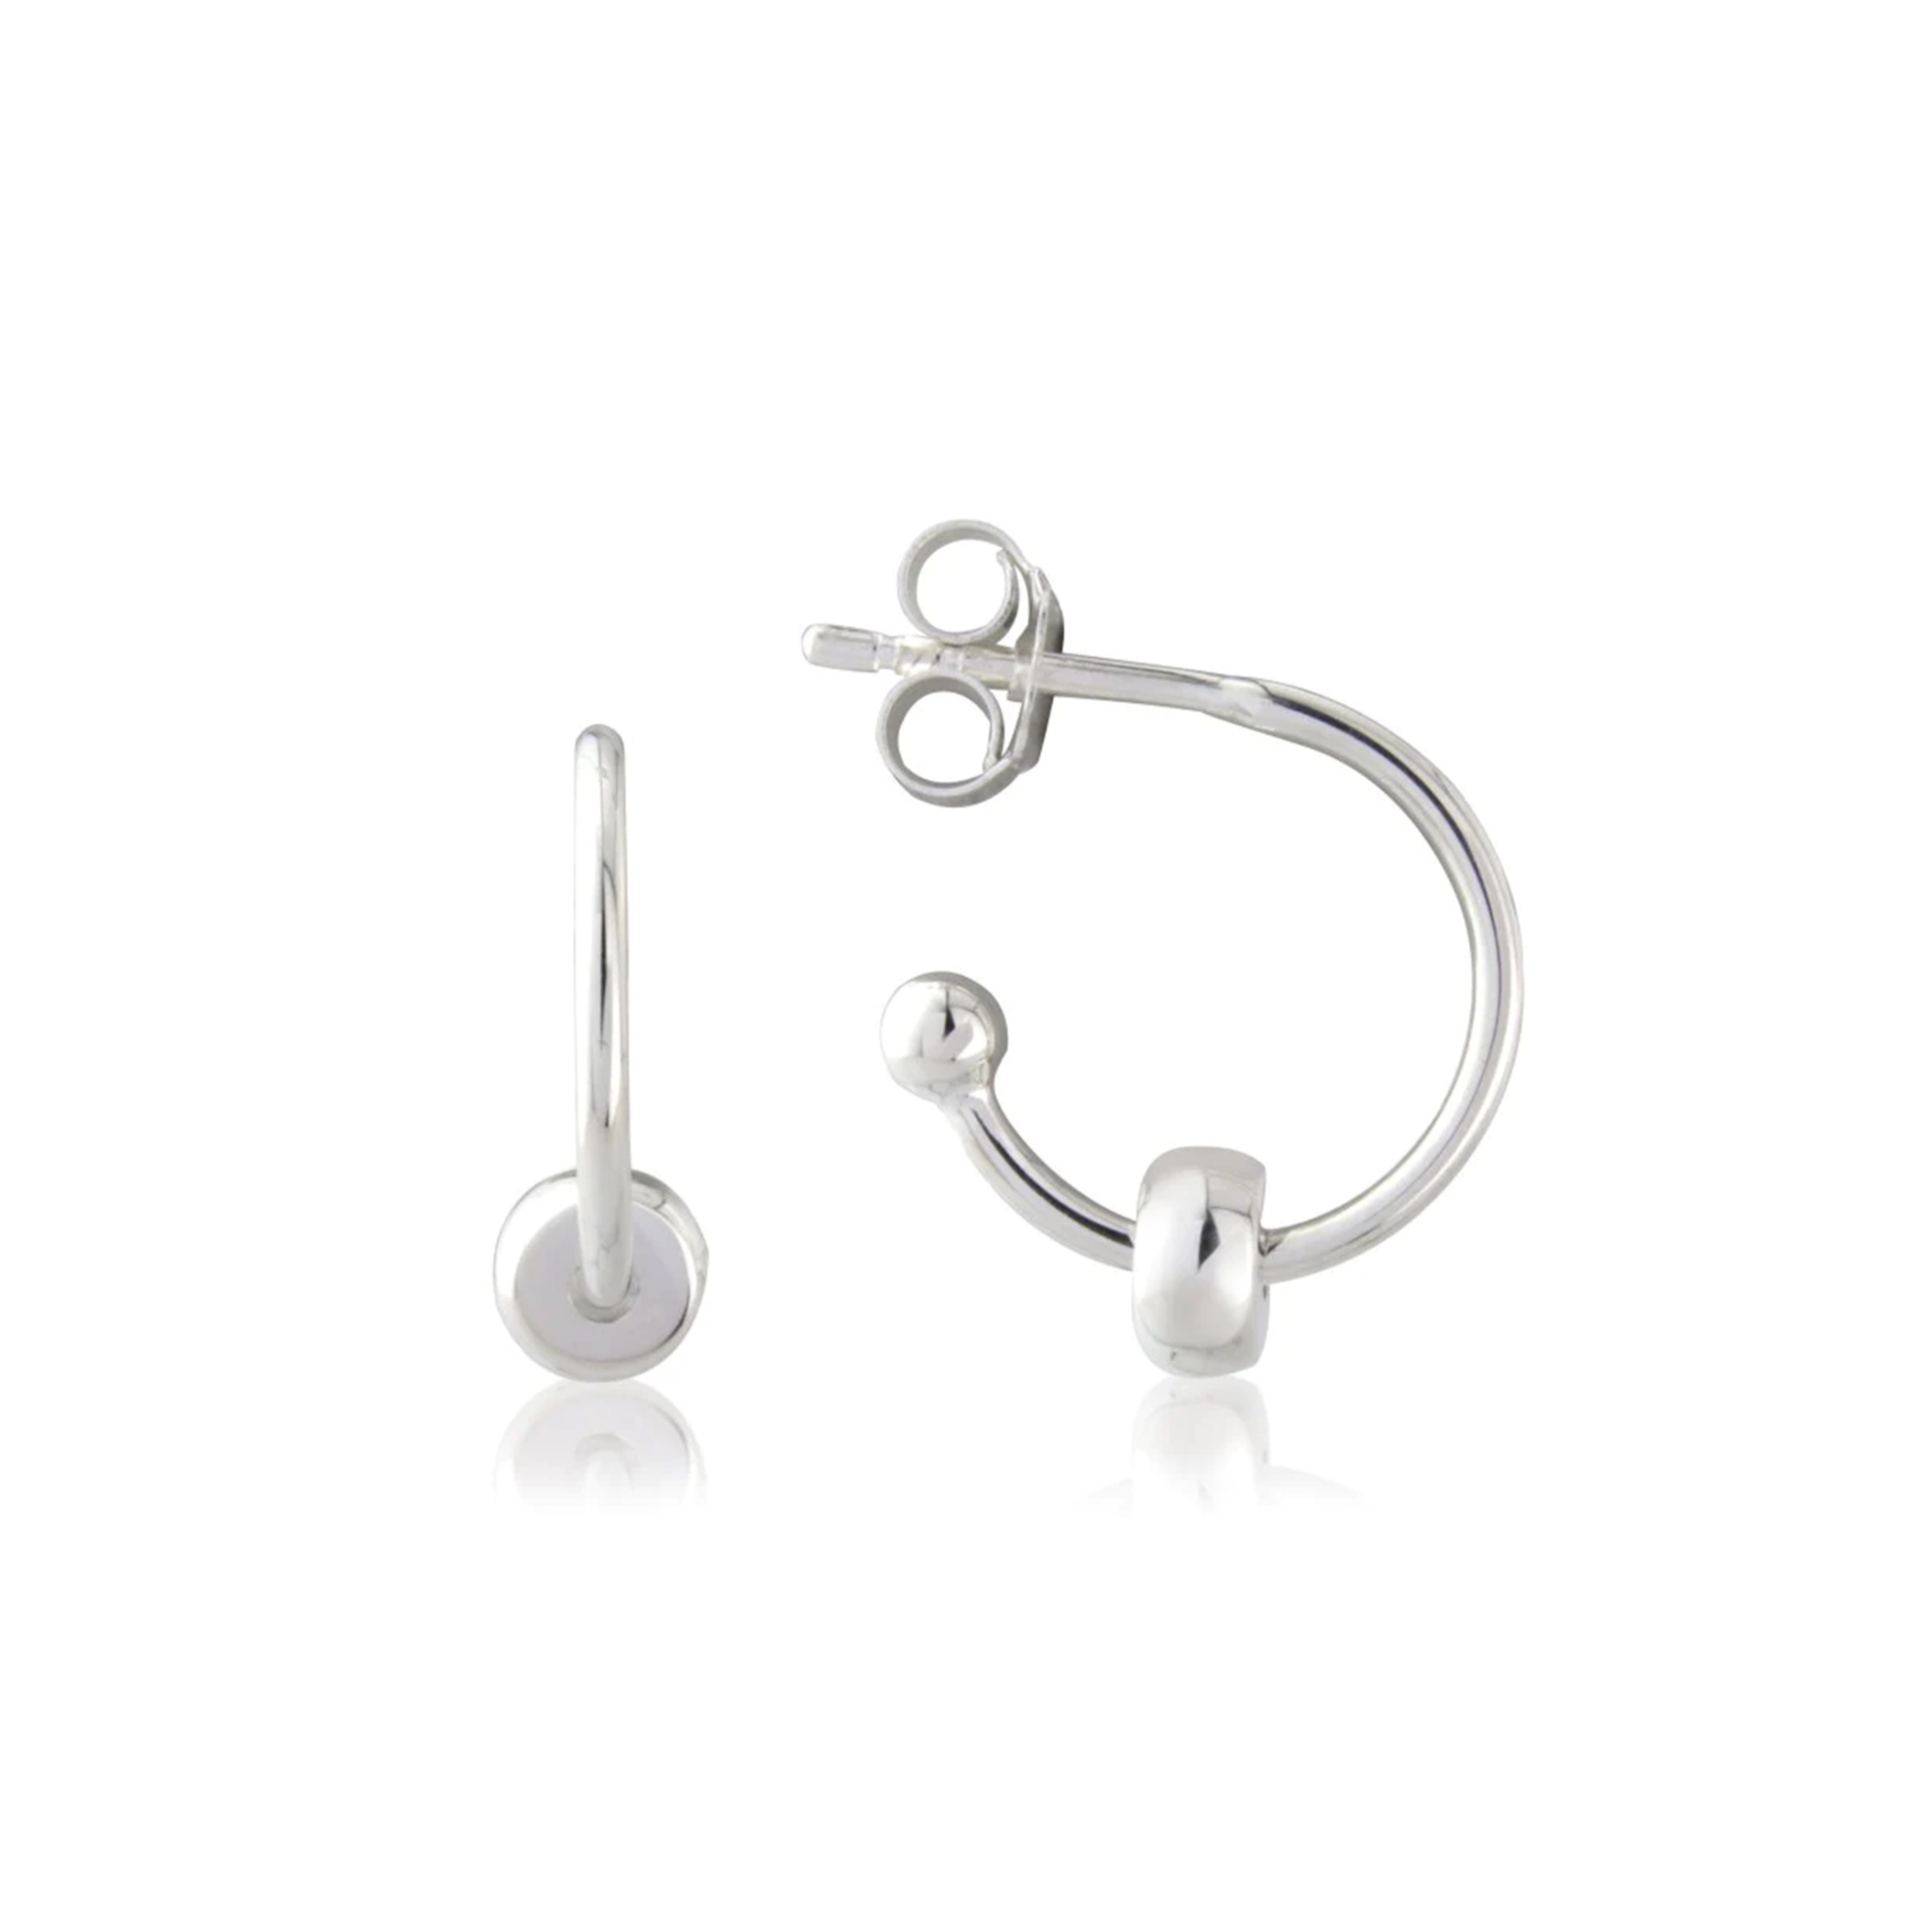 Eternity Silver Hoop Earrings with Bead